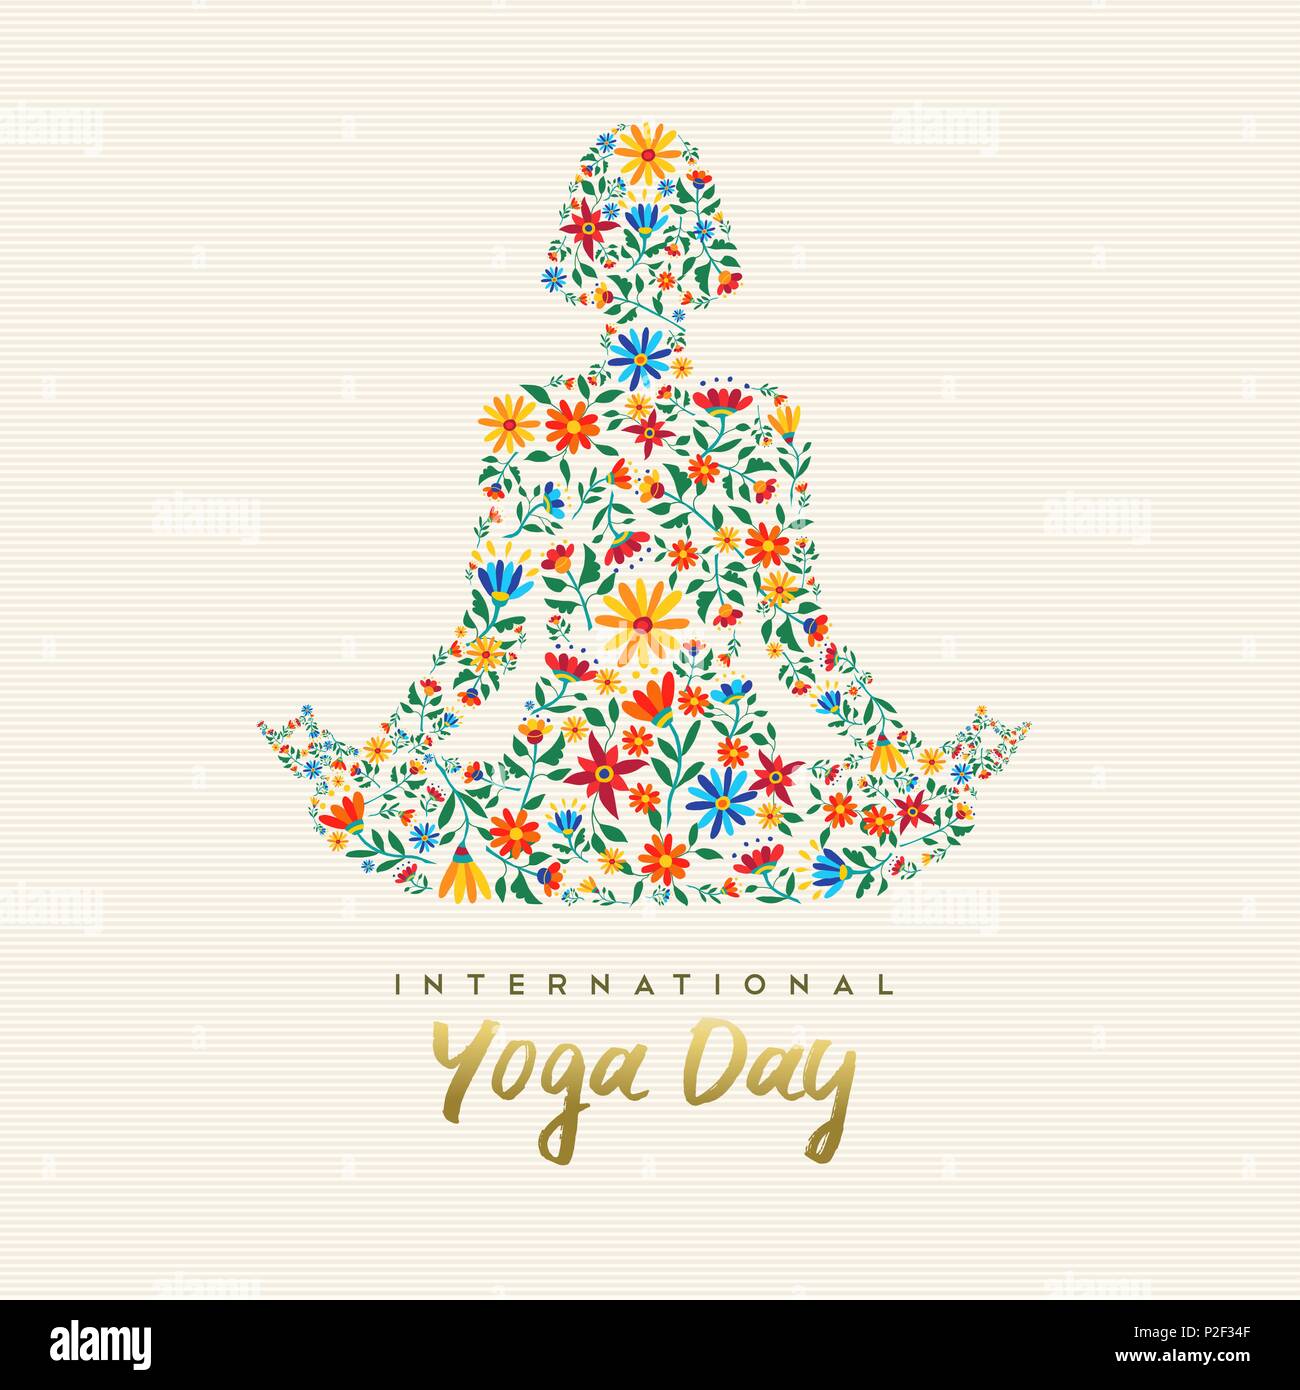 Internationale yoga Tag Design für eine besondere Veranstaltung. Mädchen der Meditation im Lotussitz der Blumendekoration, entspannungsübung Abbildung. EPS 10 vect Stock Vektor